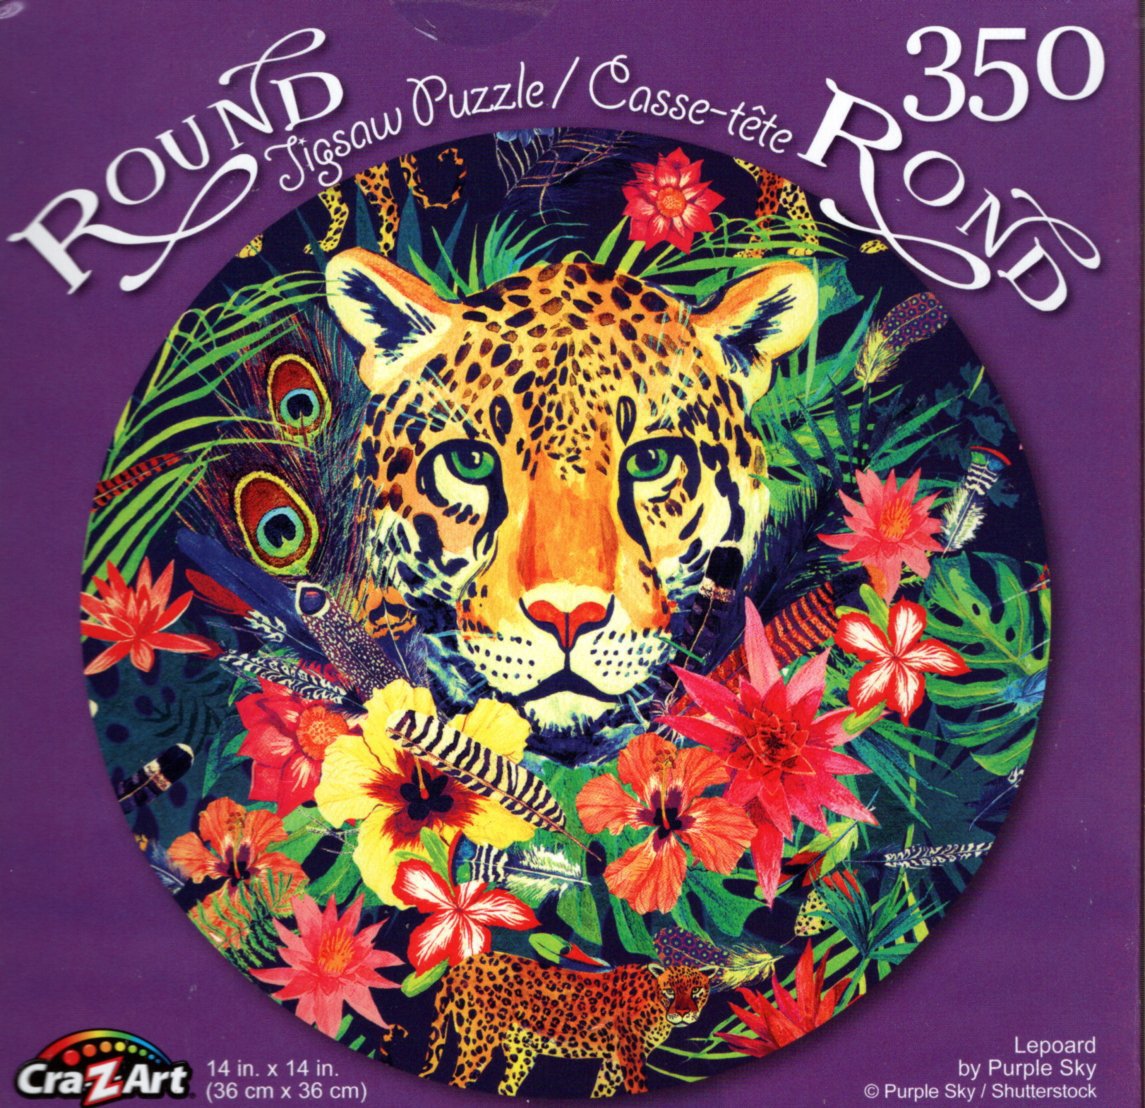 Leopard by Purple Sky - 350 Piece Round Jigsaw Puzzle